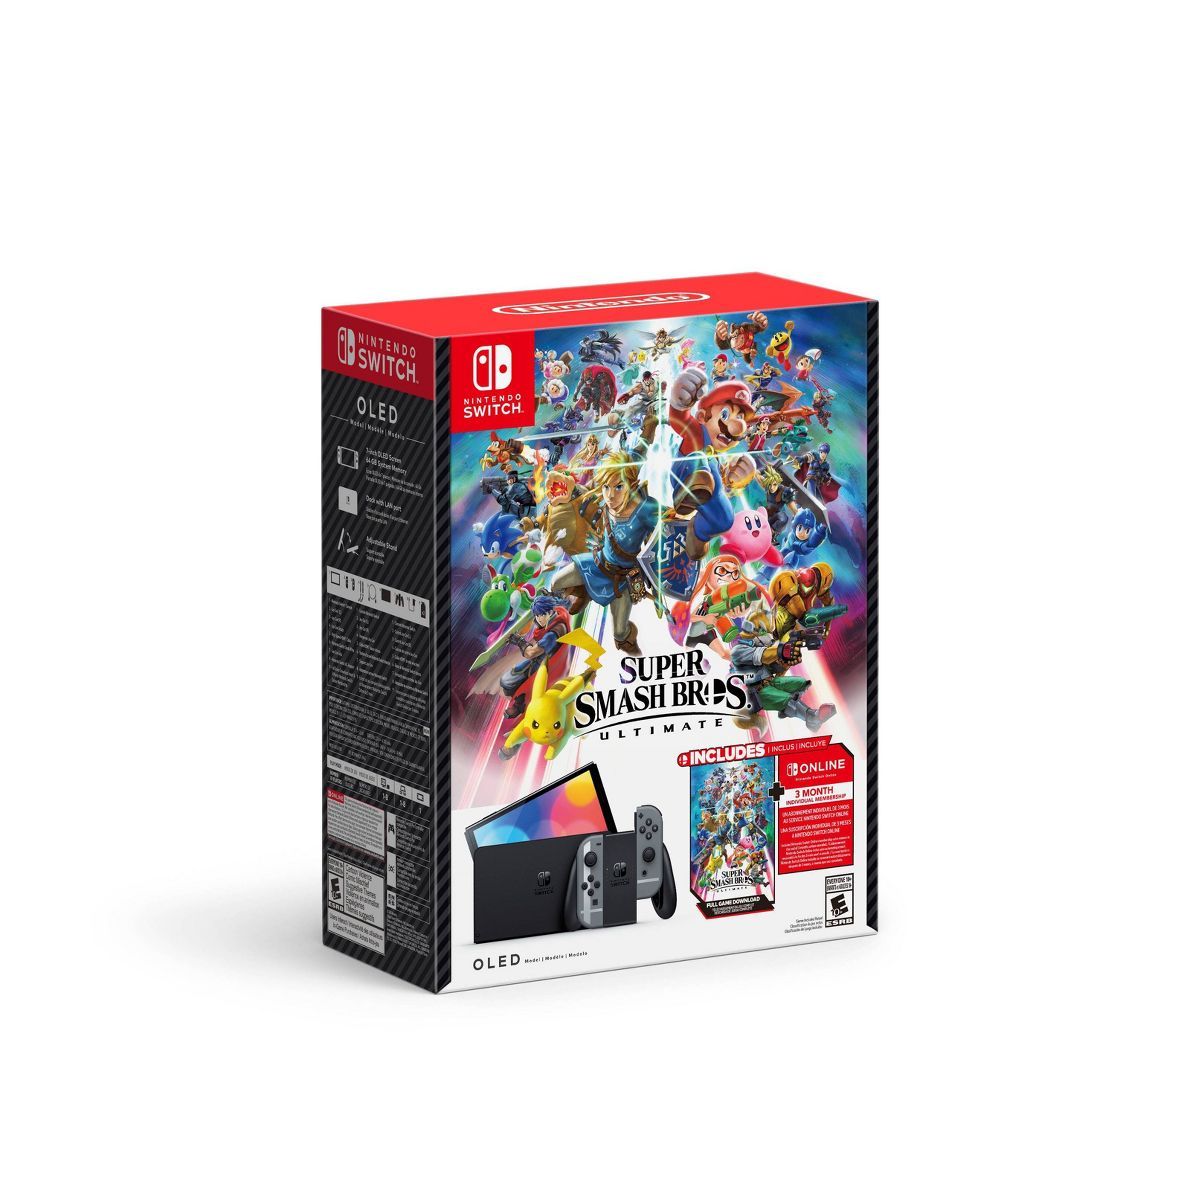 Nintendo Switch - OLED Model: Super Smash Bros Ultimate Bundle | Target